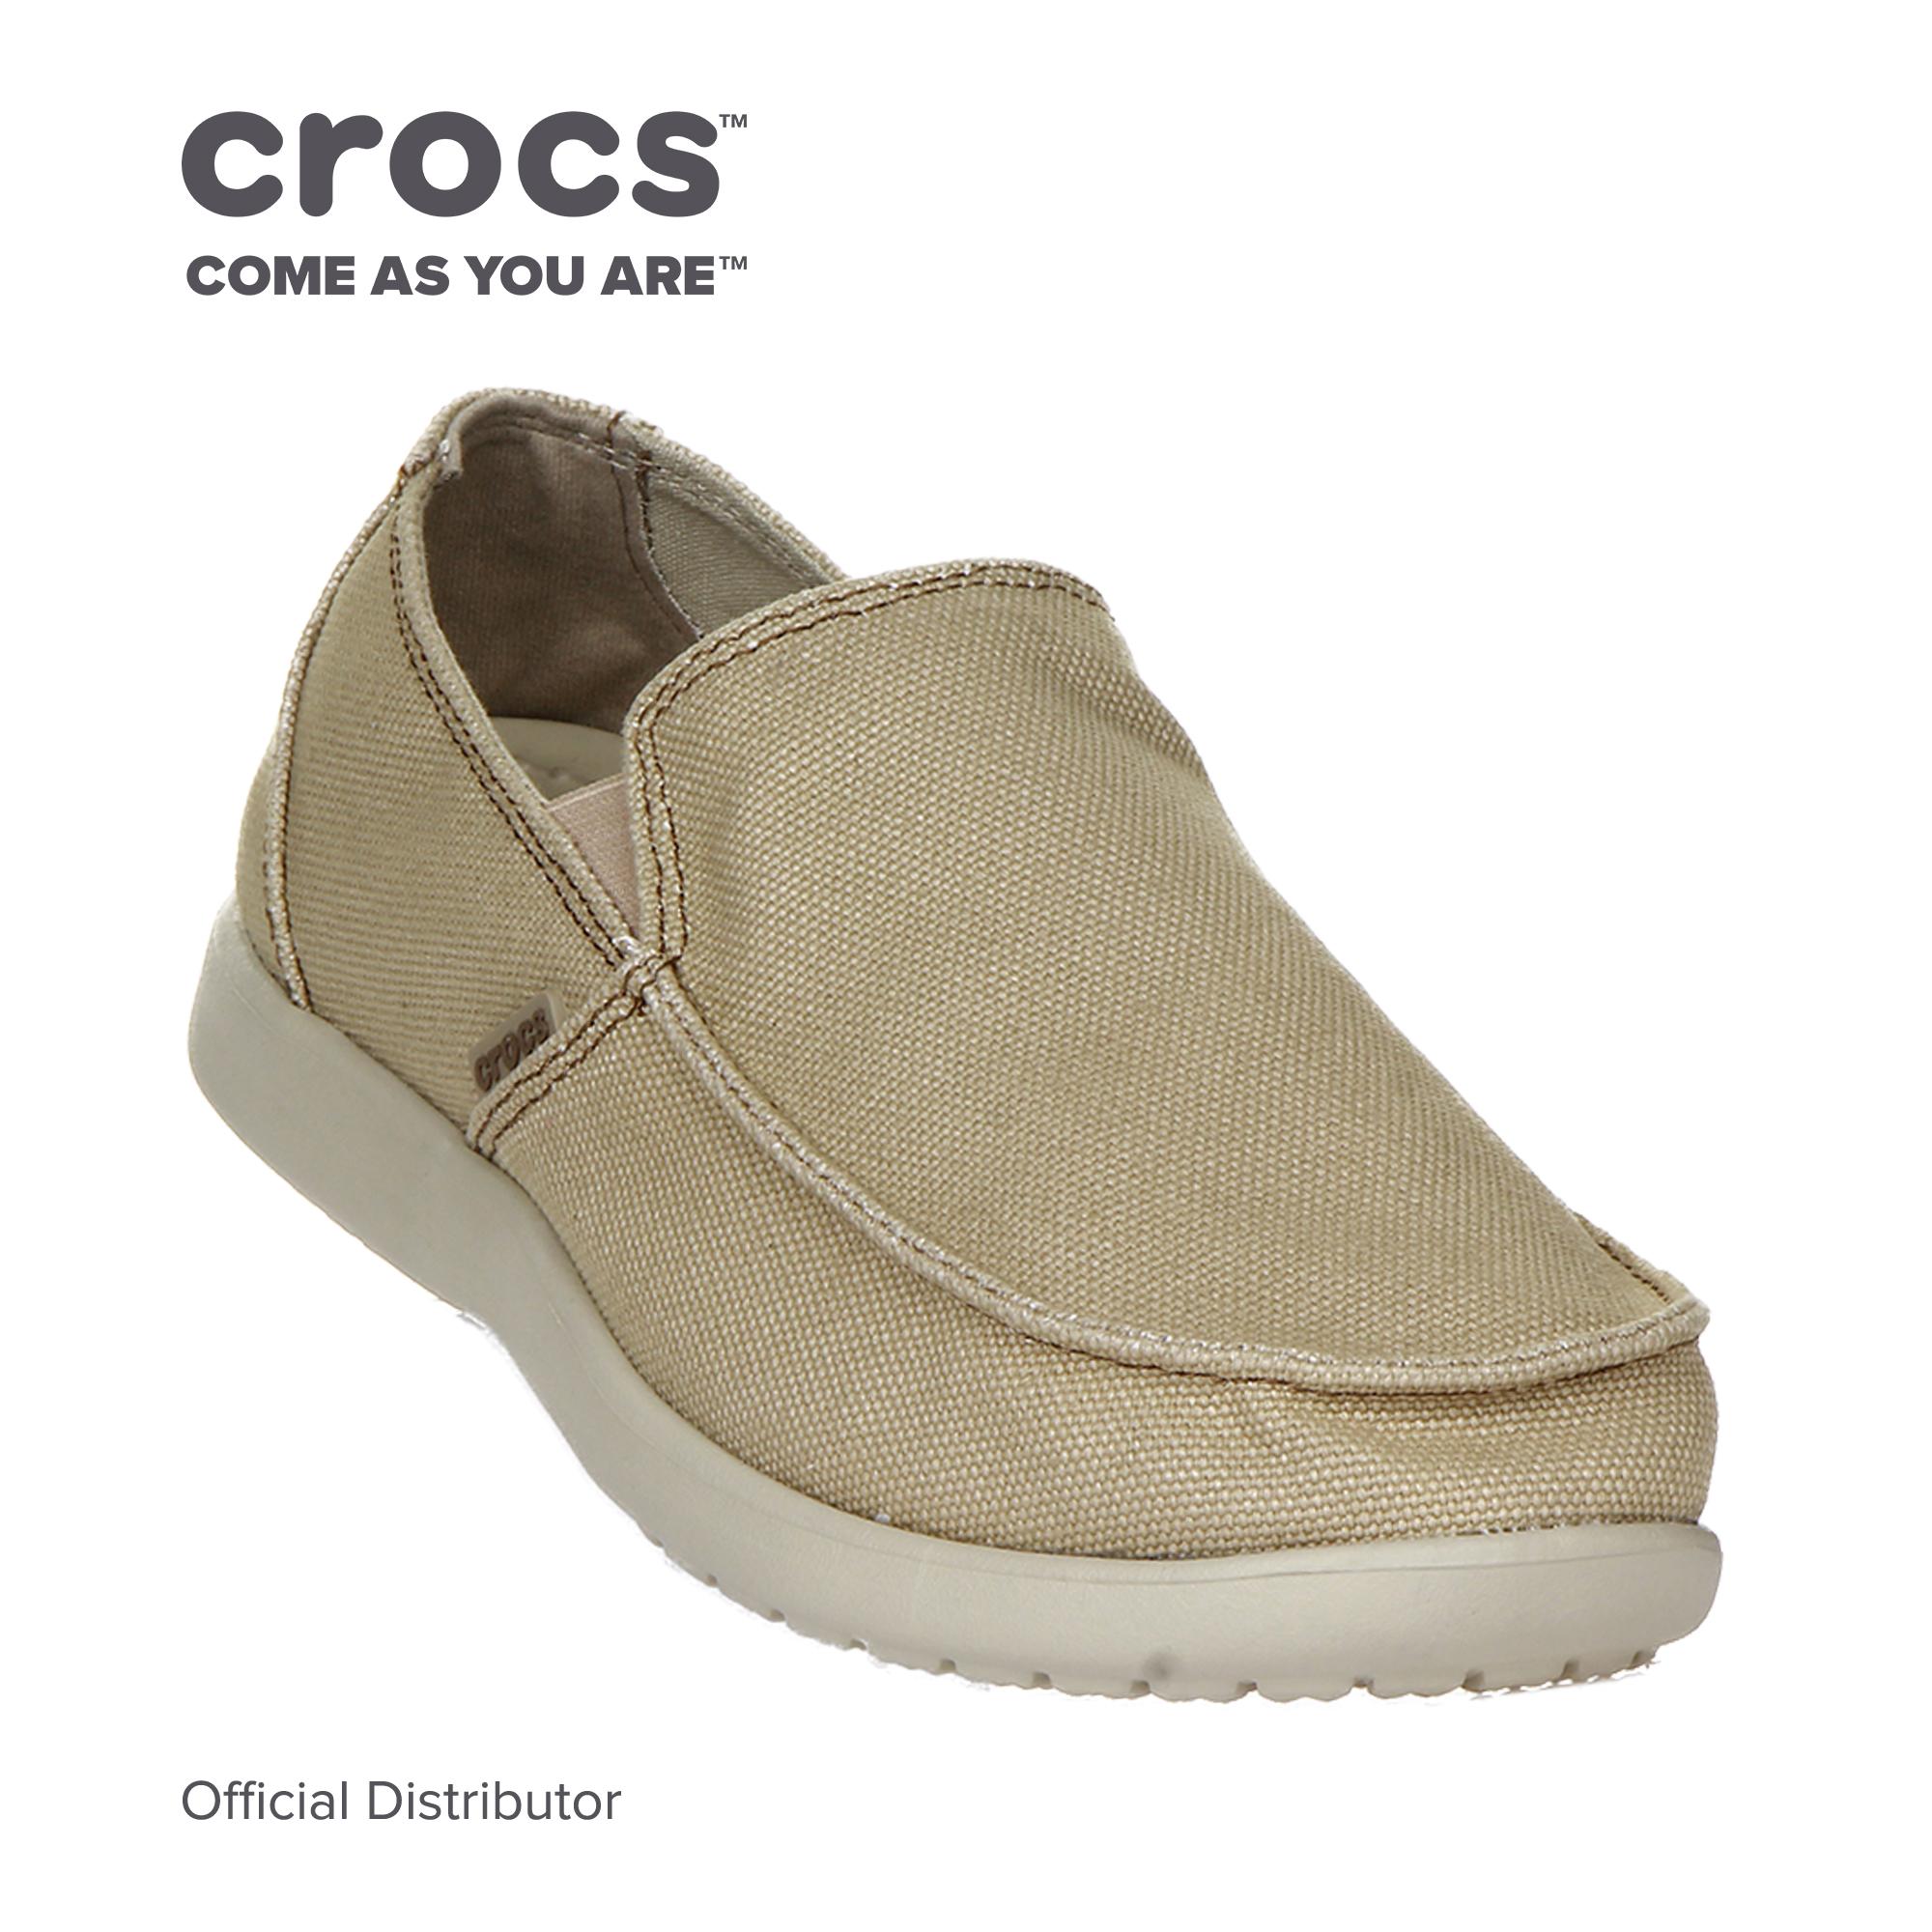 crocs men's loafers